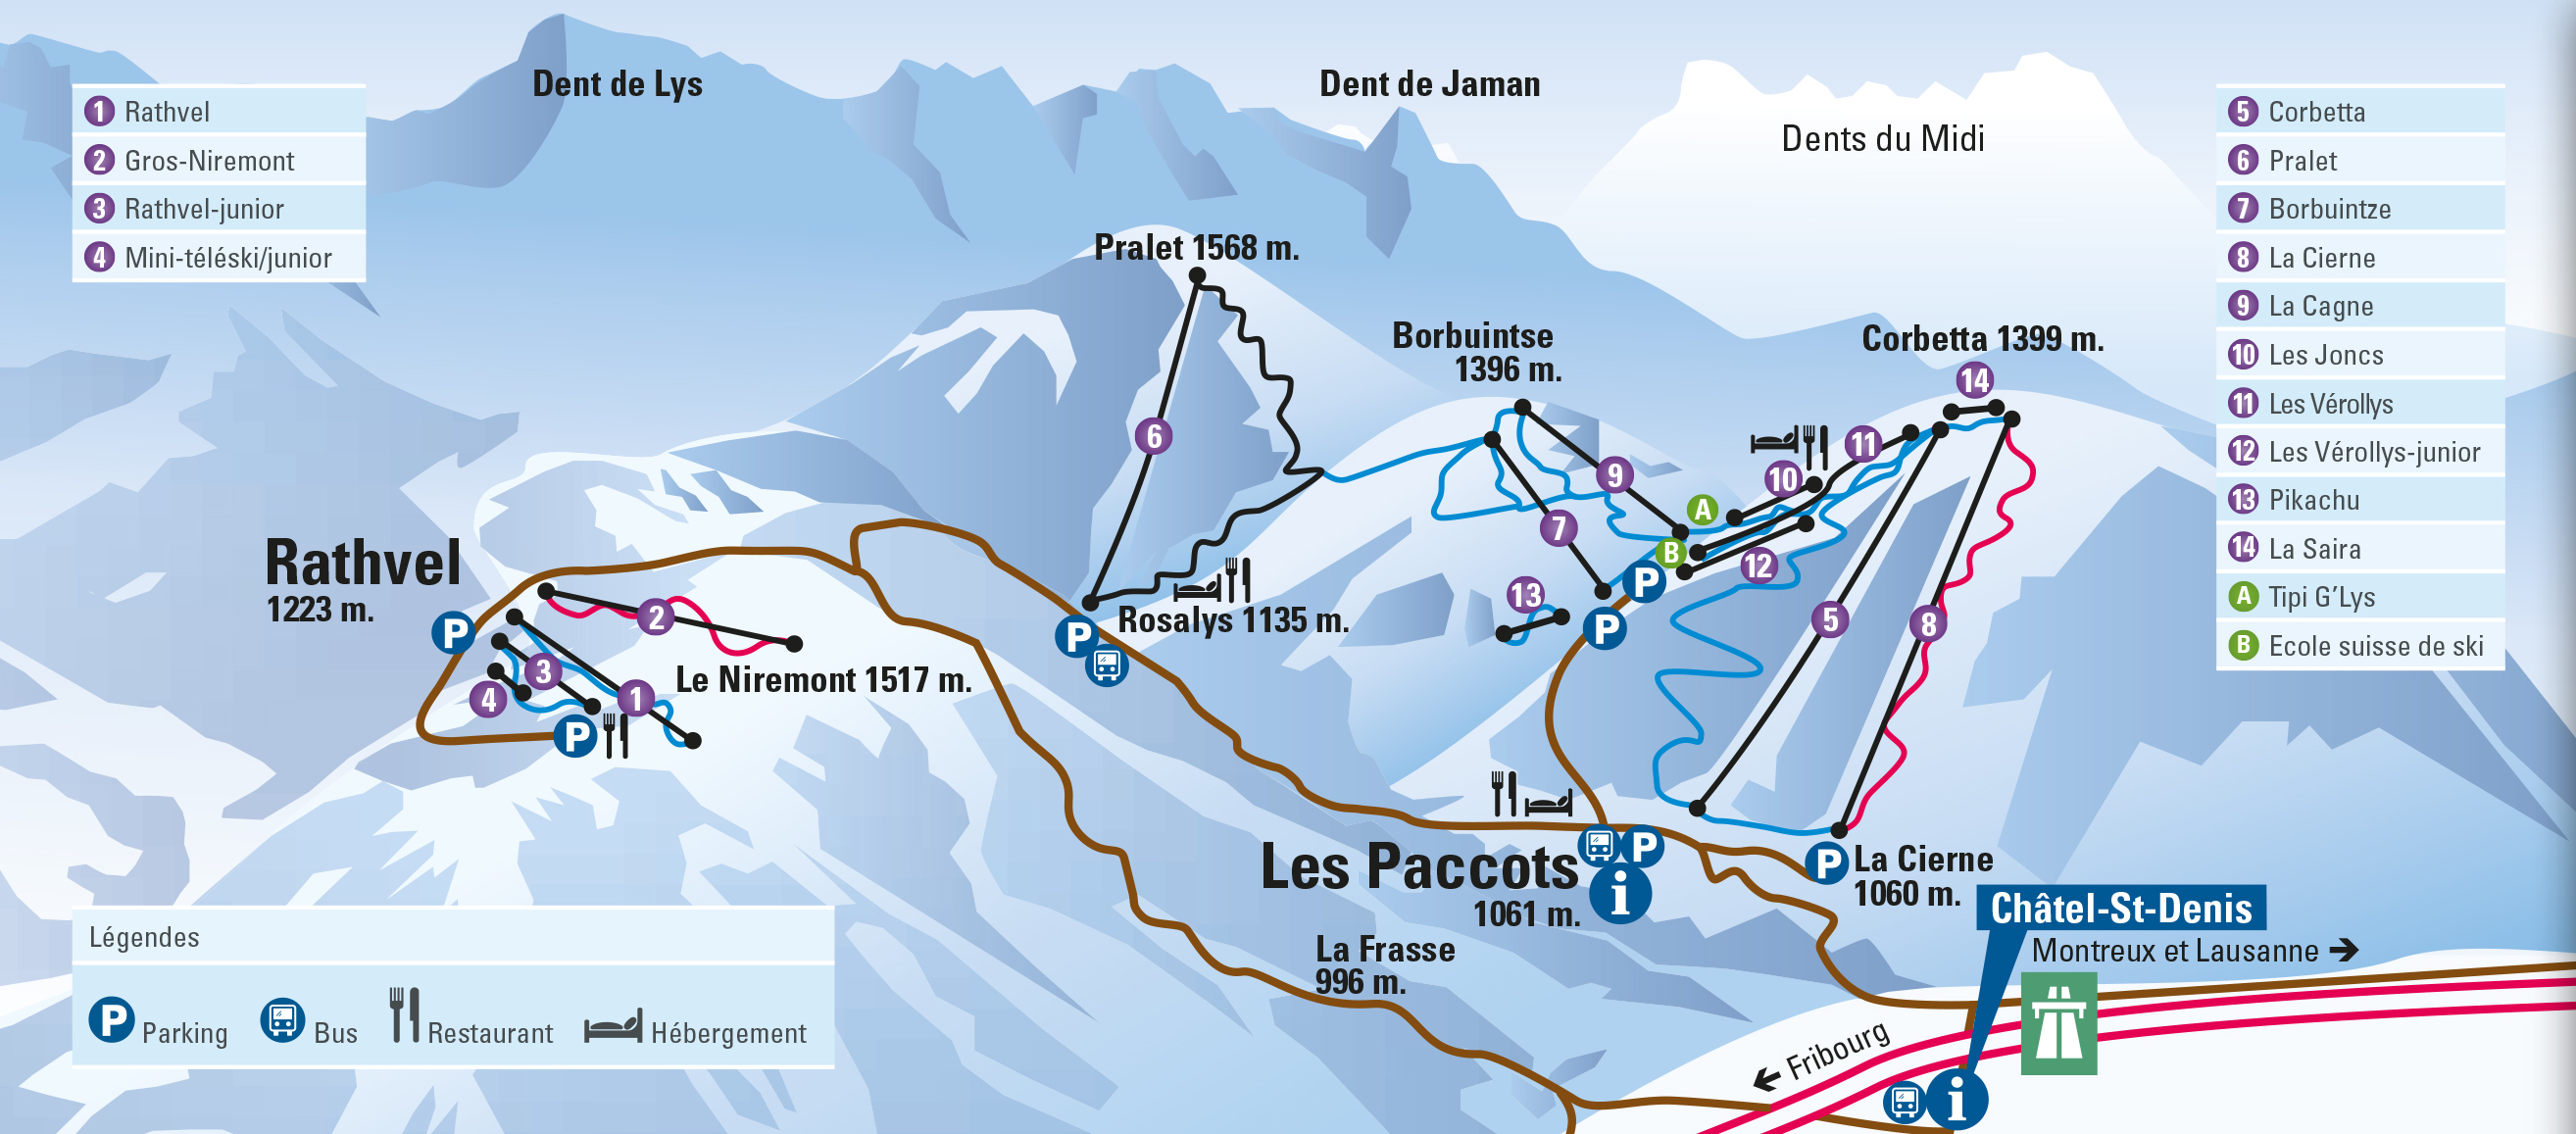 Les Paccots Piste / Trail Map